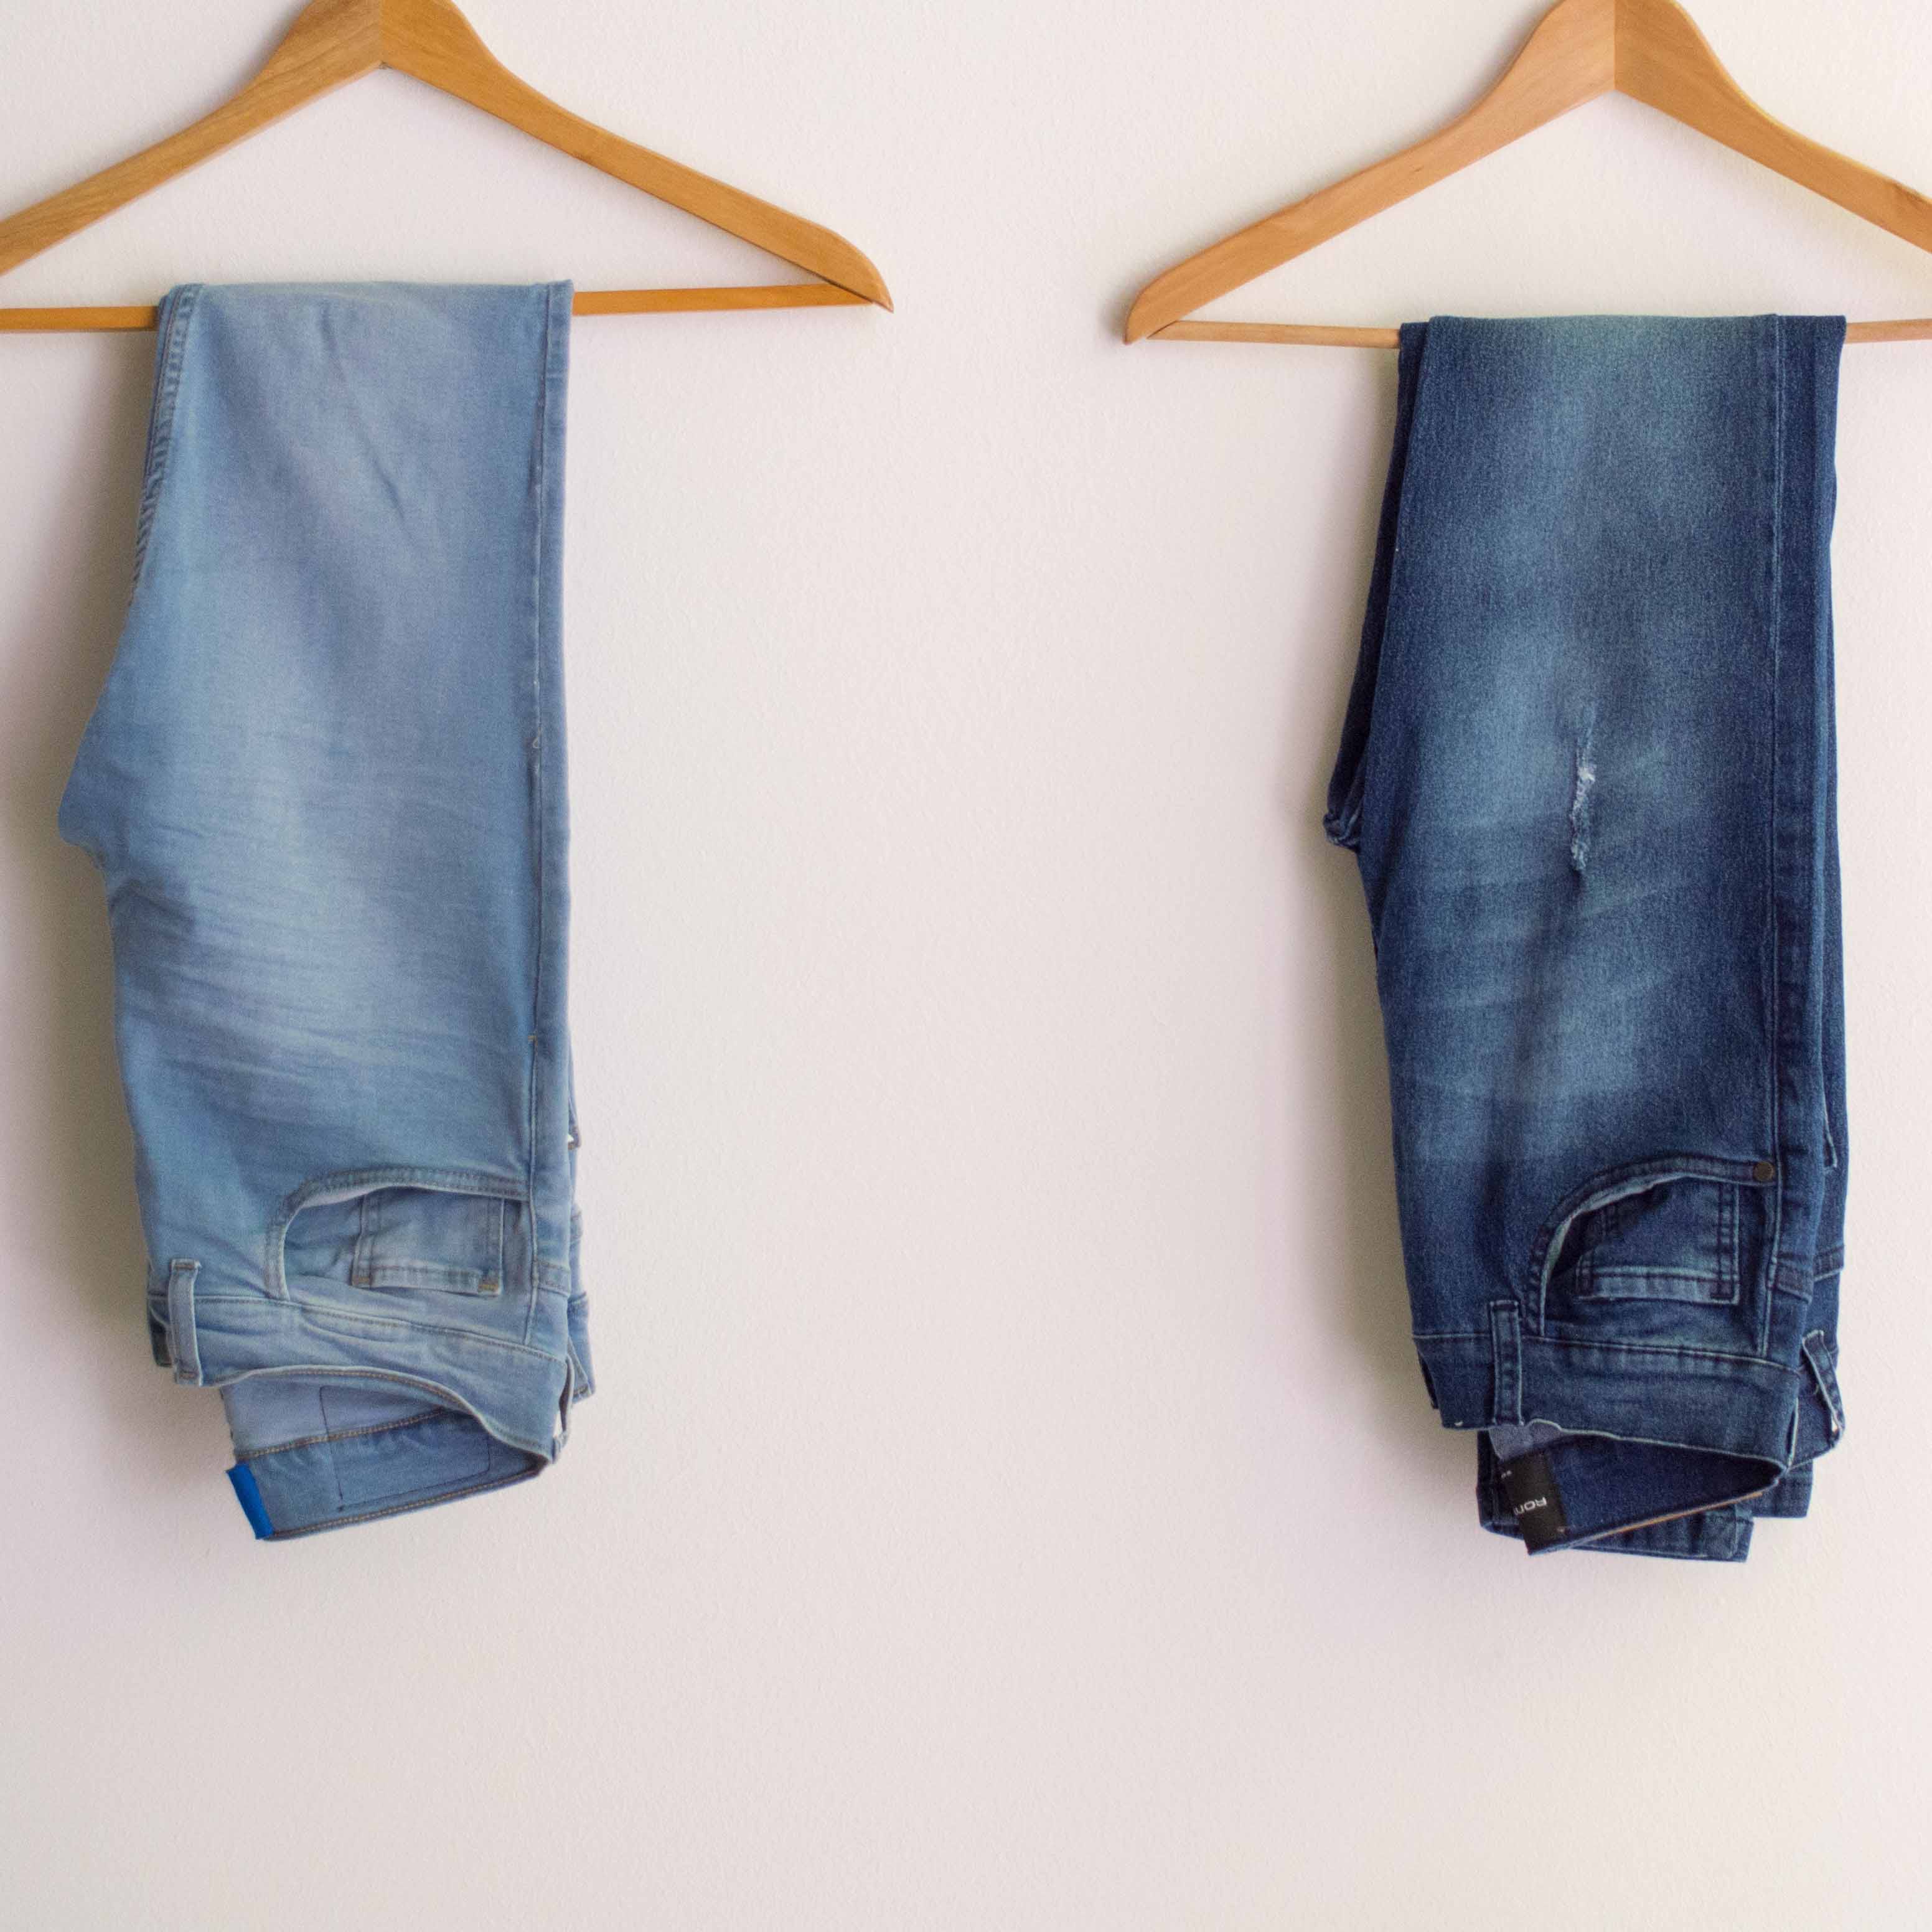 Blue,Jeans,Clothing,Denim,Textile,Clothes hanger,Trousers